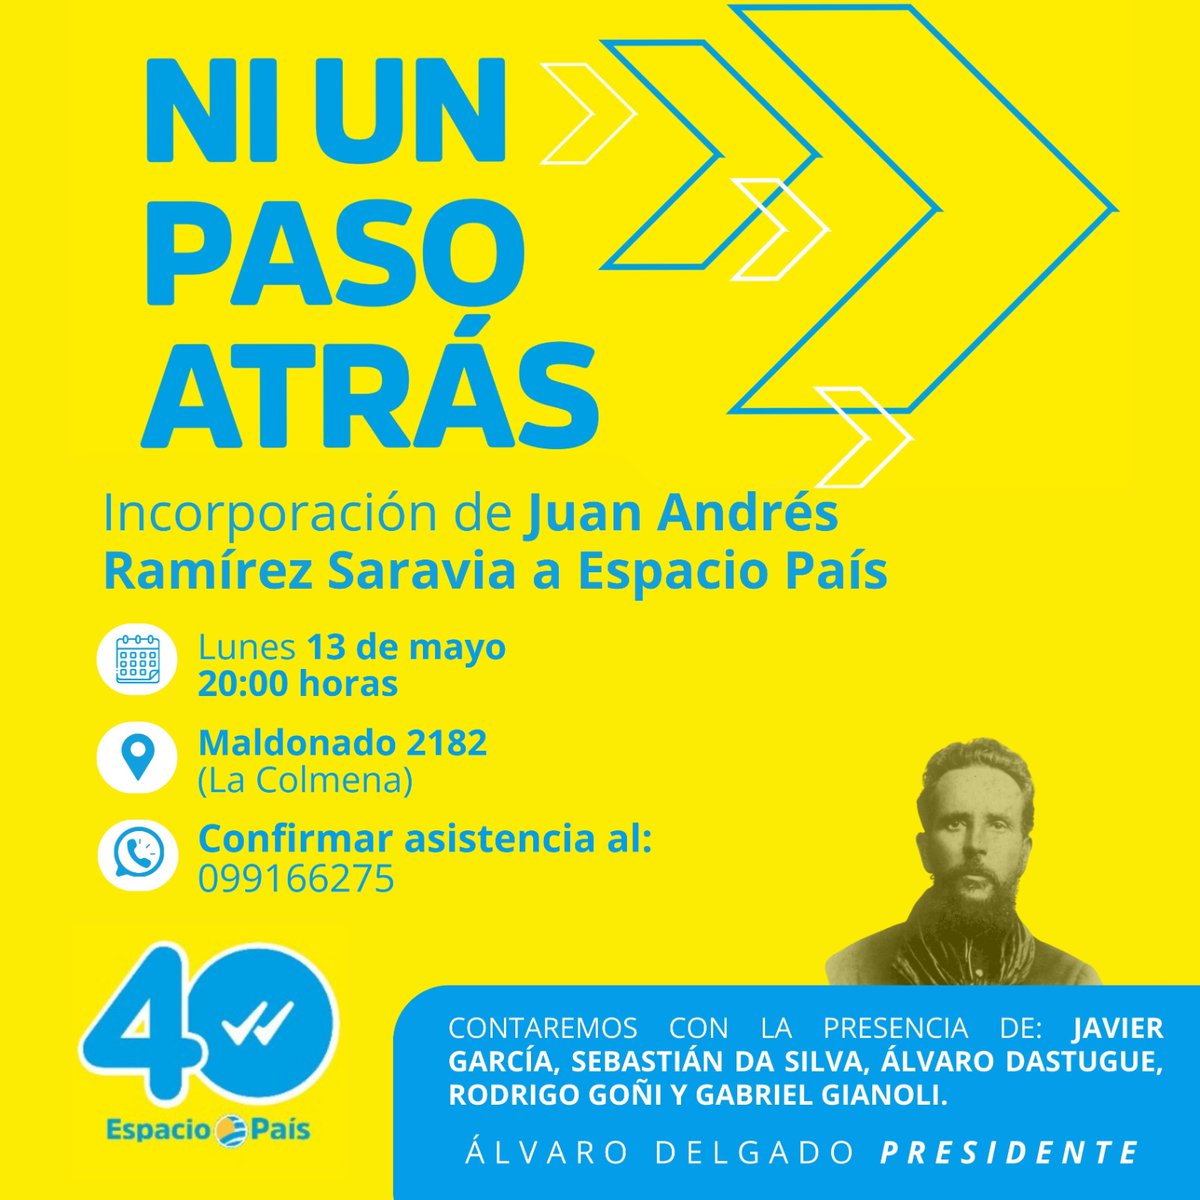 Los esperamos mañana en dos nuevas inauguraciones #UruguayParaAdelante #NiUnPasoAtrás